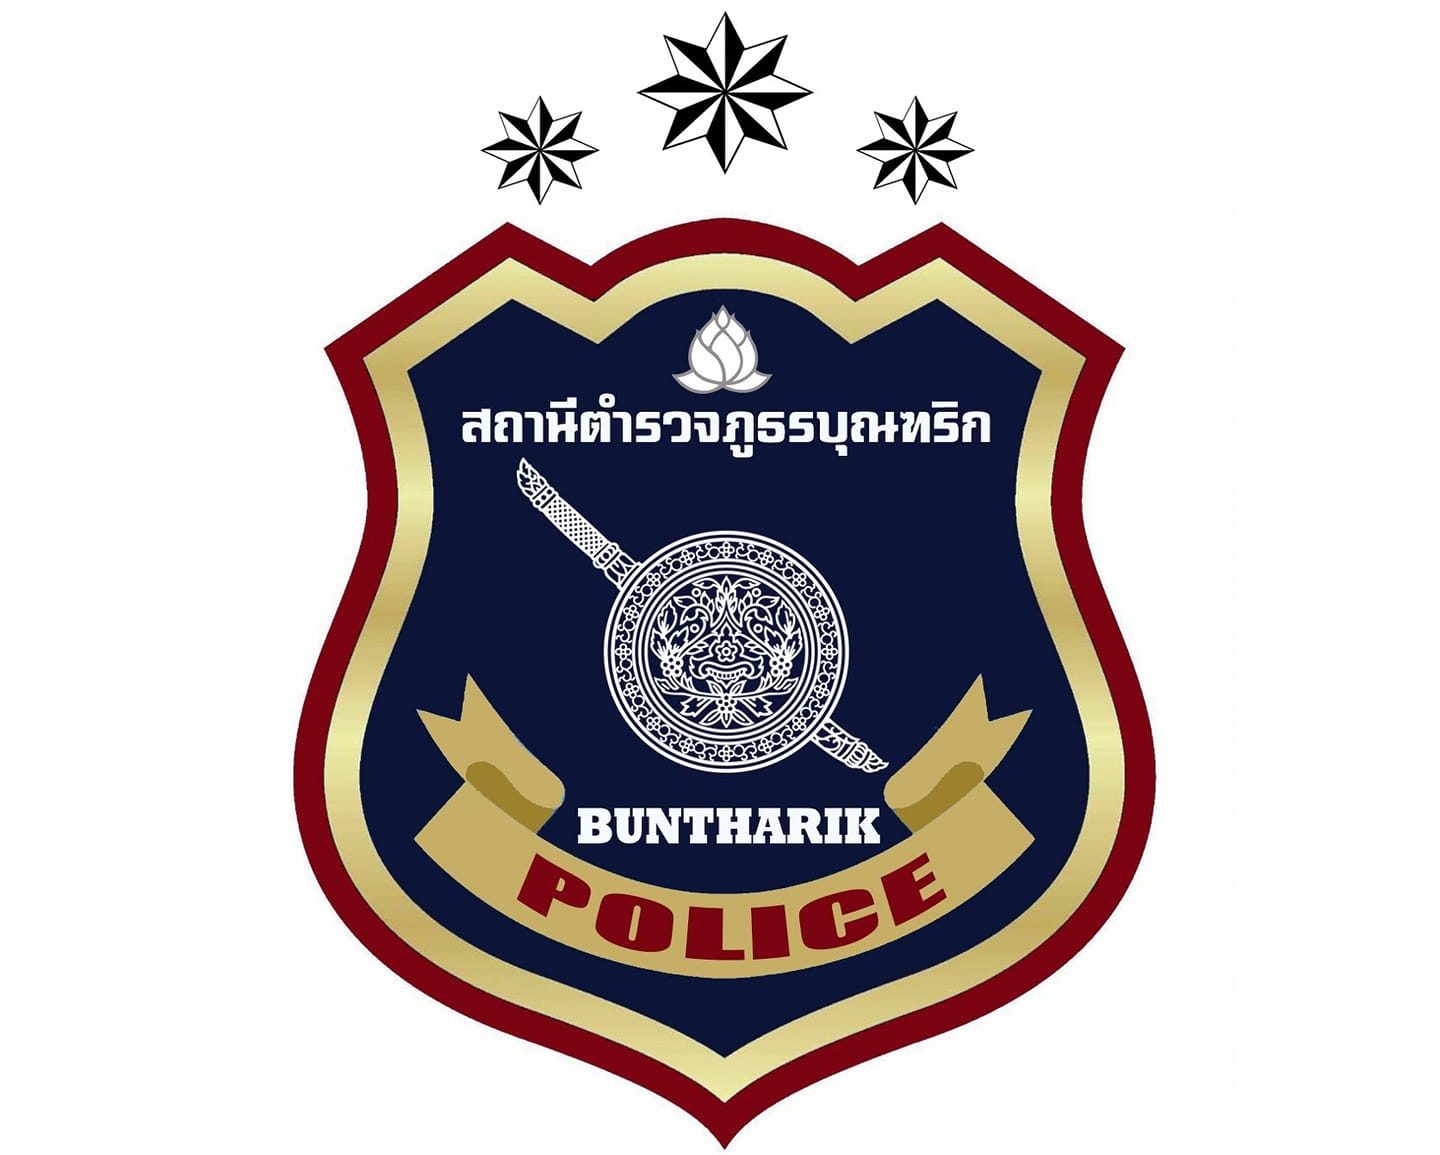 สถานีตำรวจภูธรบุณฑริก logo